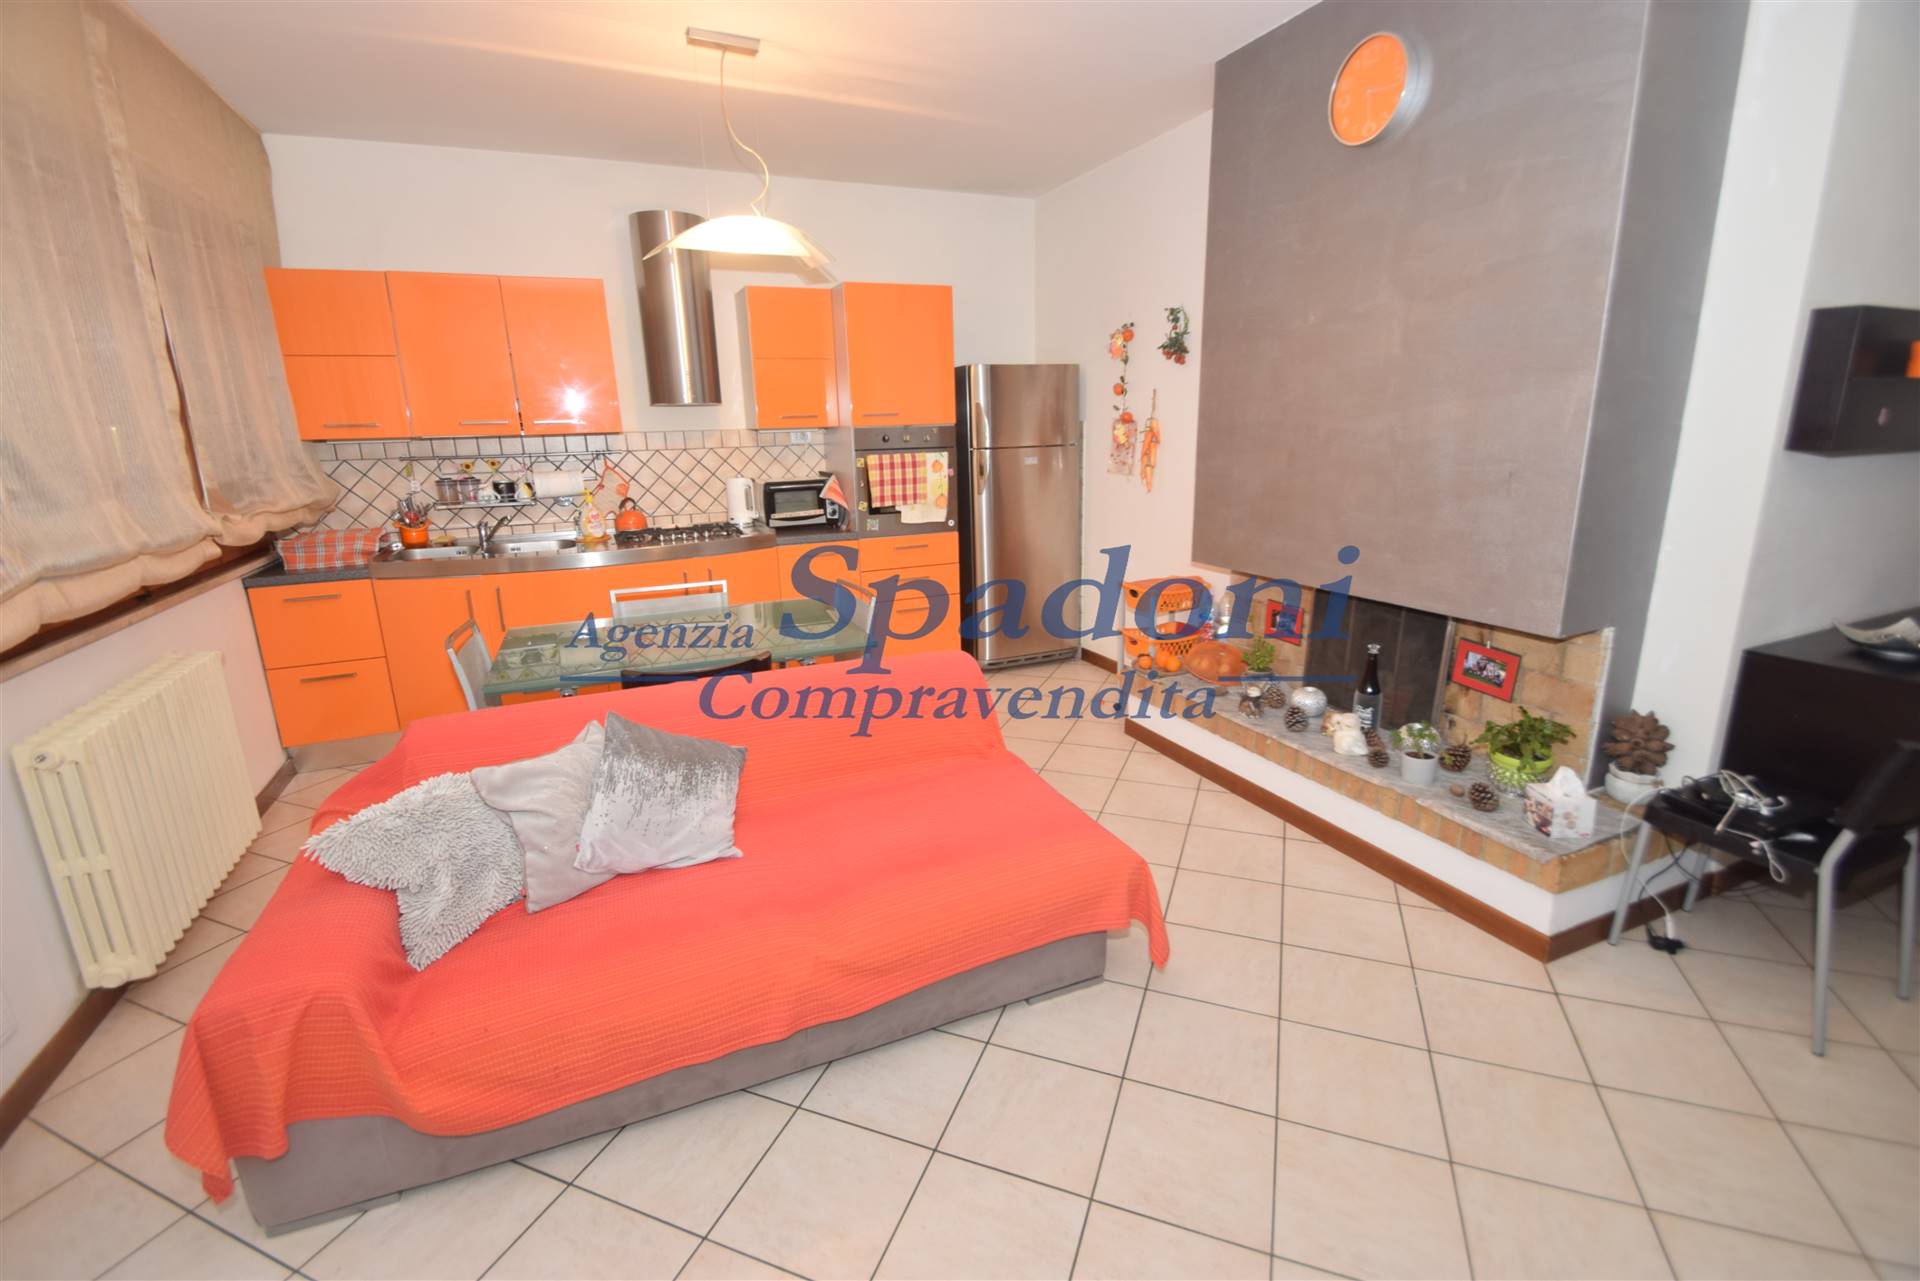 Appartamento in vendita a Buggiano, 4 locali, prezzo € 125.000 | PortaleAgenzieImmobiliari.it